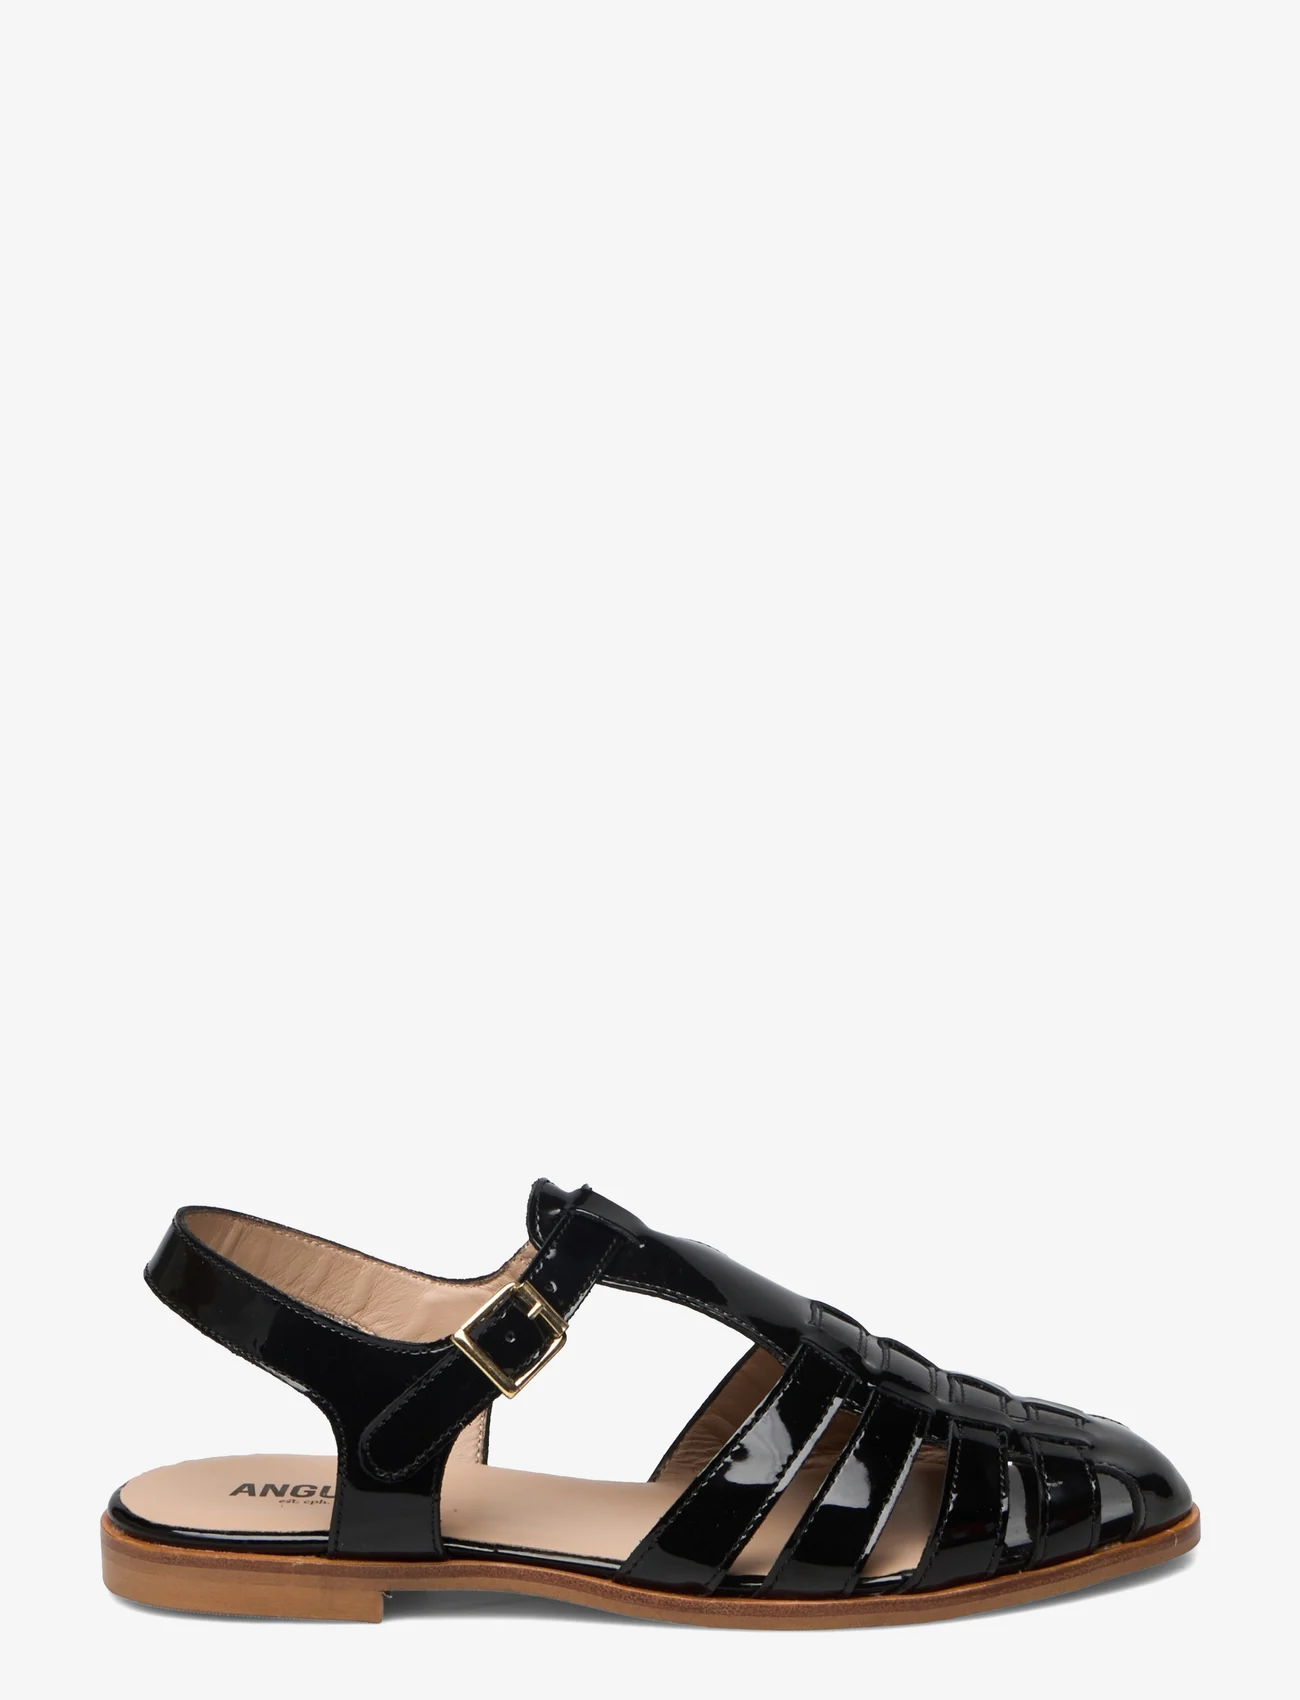 ANGULUS - Sandals - flat - closed toe - op - flat sandals - 2320 black - 1